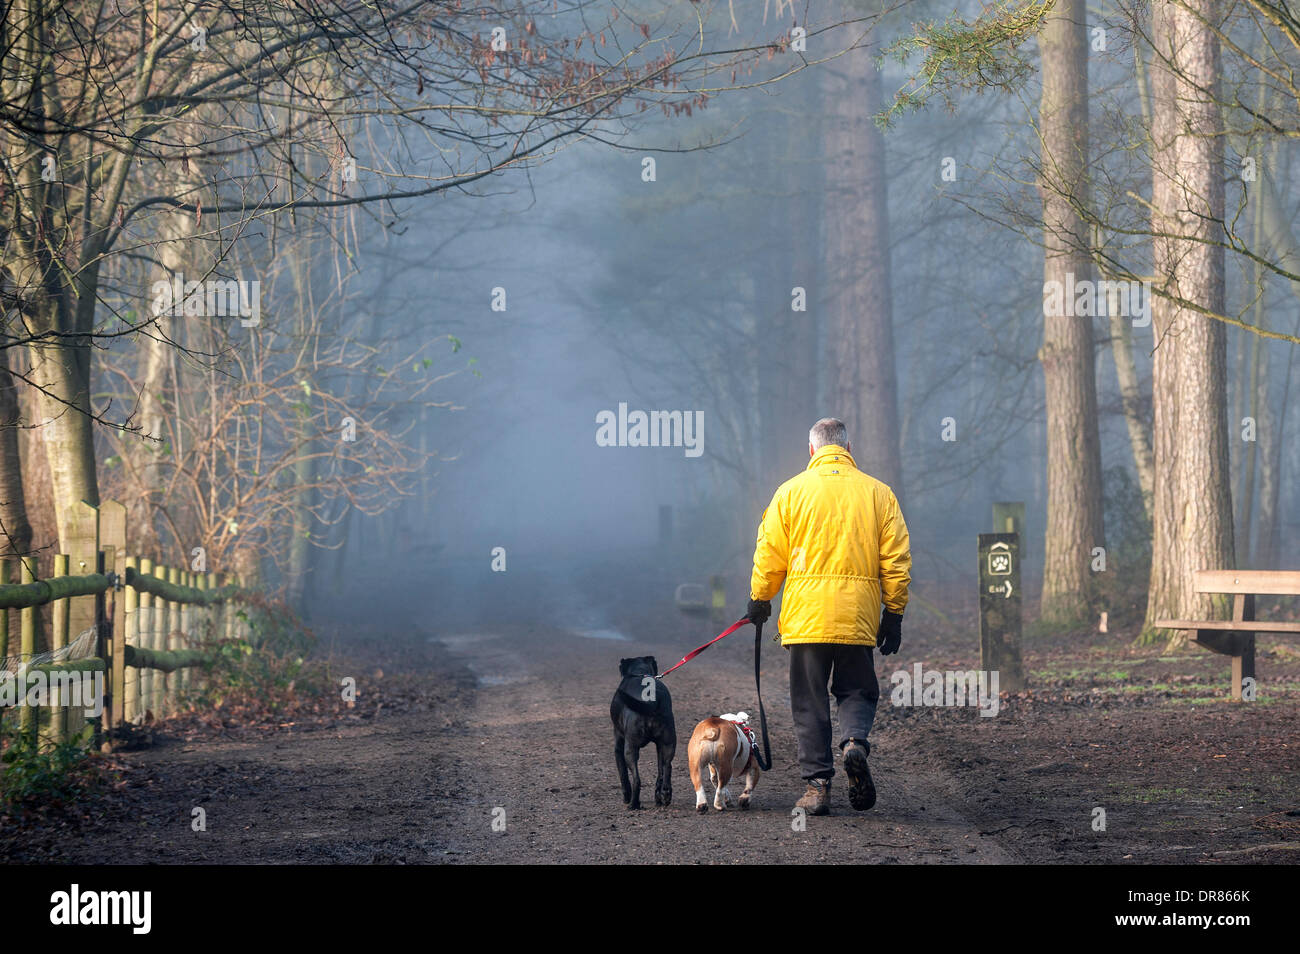 Brentwood, Essex, Regno Unito. 21 gennaio 2014 un dog walker e i suoi animali domestici brave la fitta nebbia avvolgenti campagna dell'Essex. Fotografo: Gordon Scammell/Alamy Live News Foto Stock